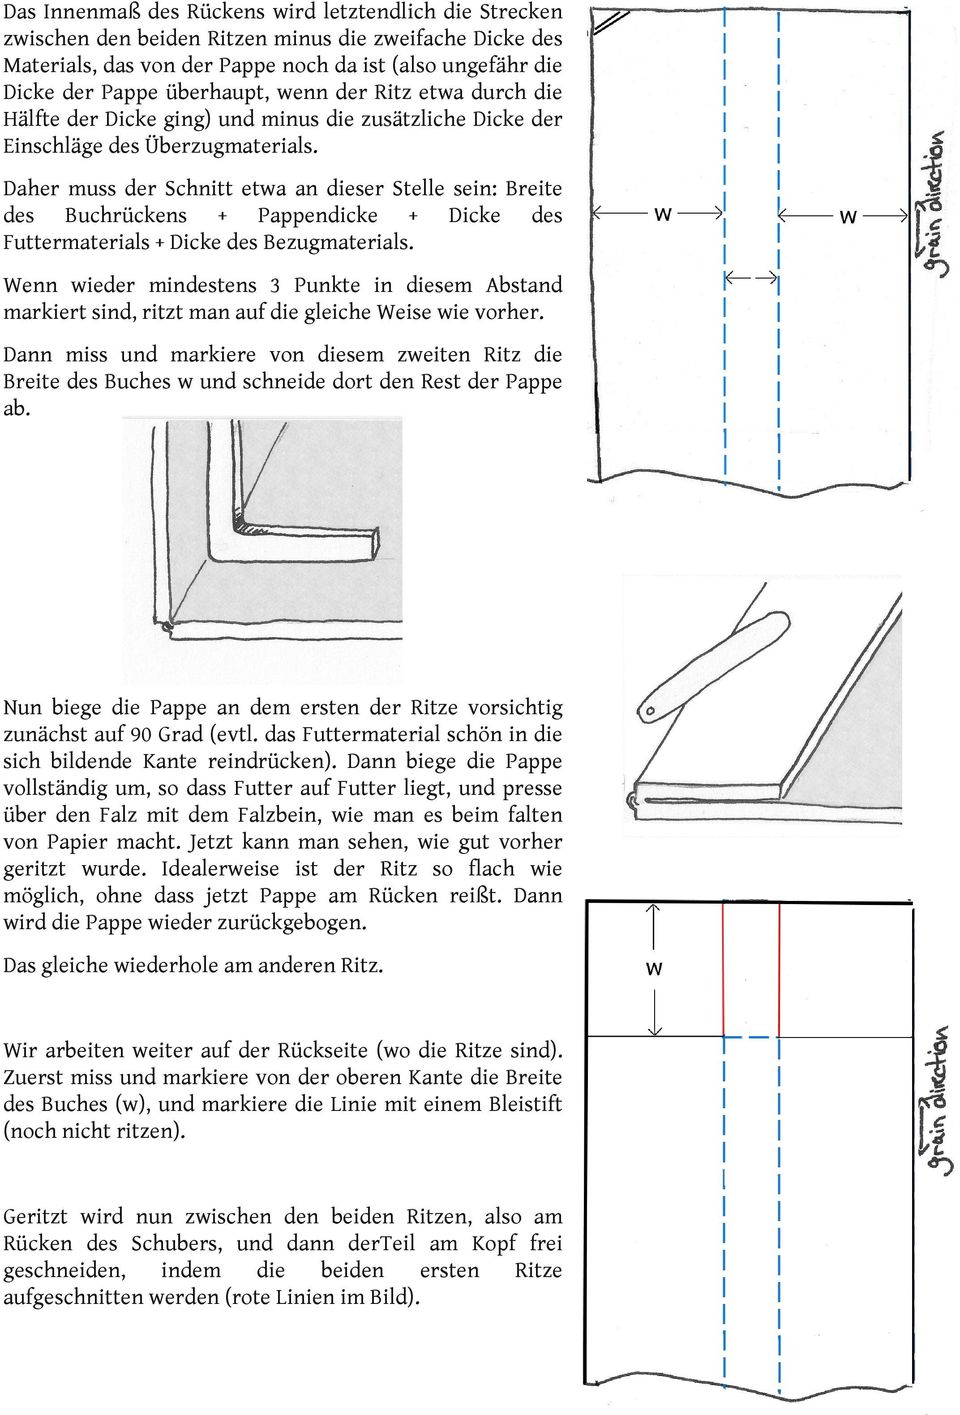 Daher muss der Schnitt etwa an dieser Stelle sein: Breite des Buchrückens + Pappendicke + Dicke des Futtermaterials + Dicke des Bezugmaterials.